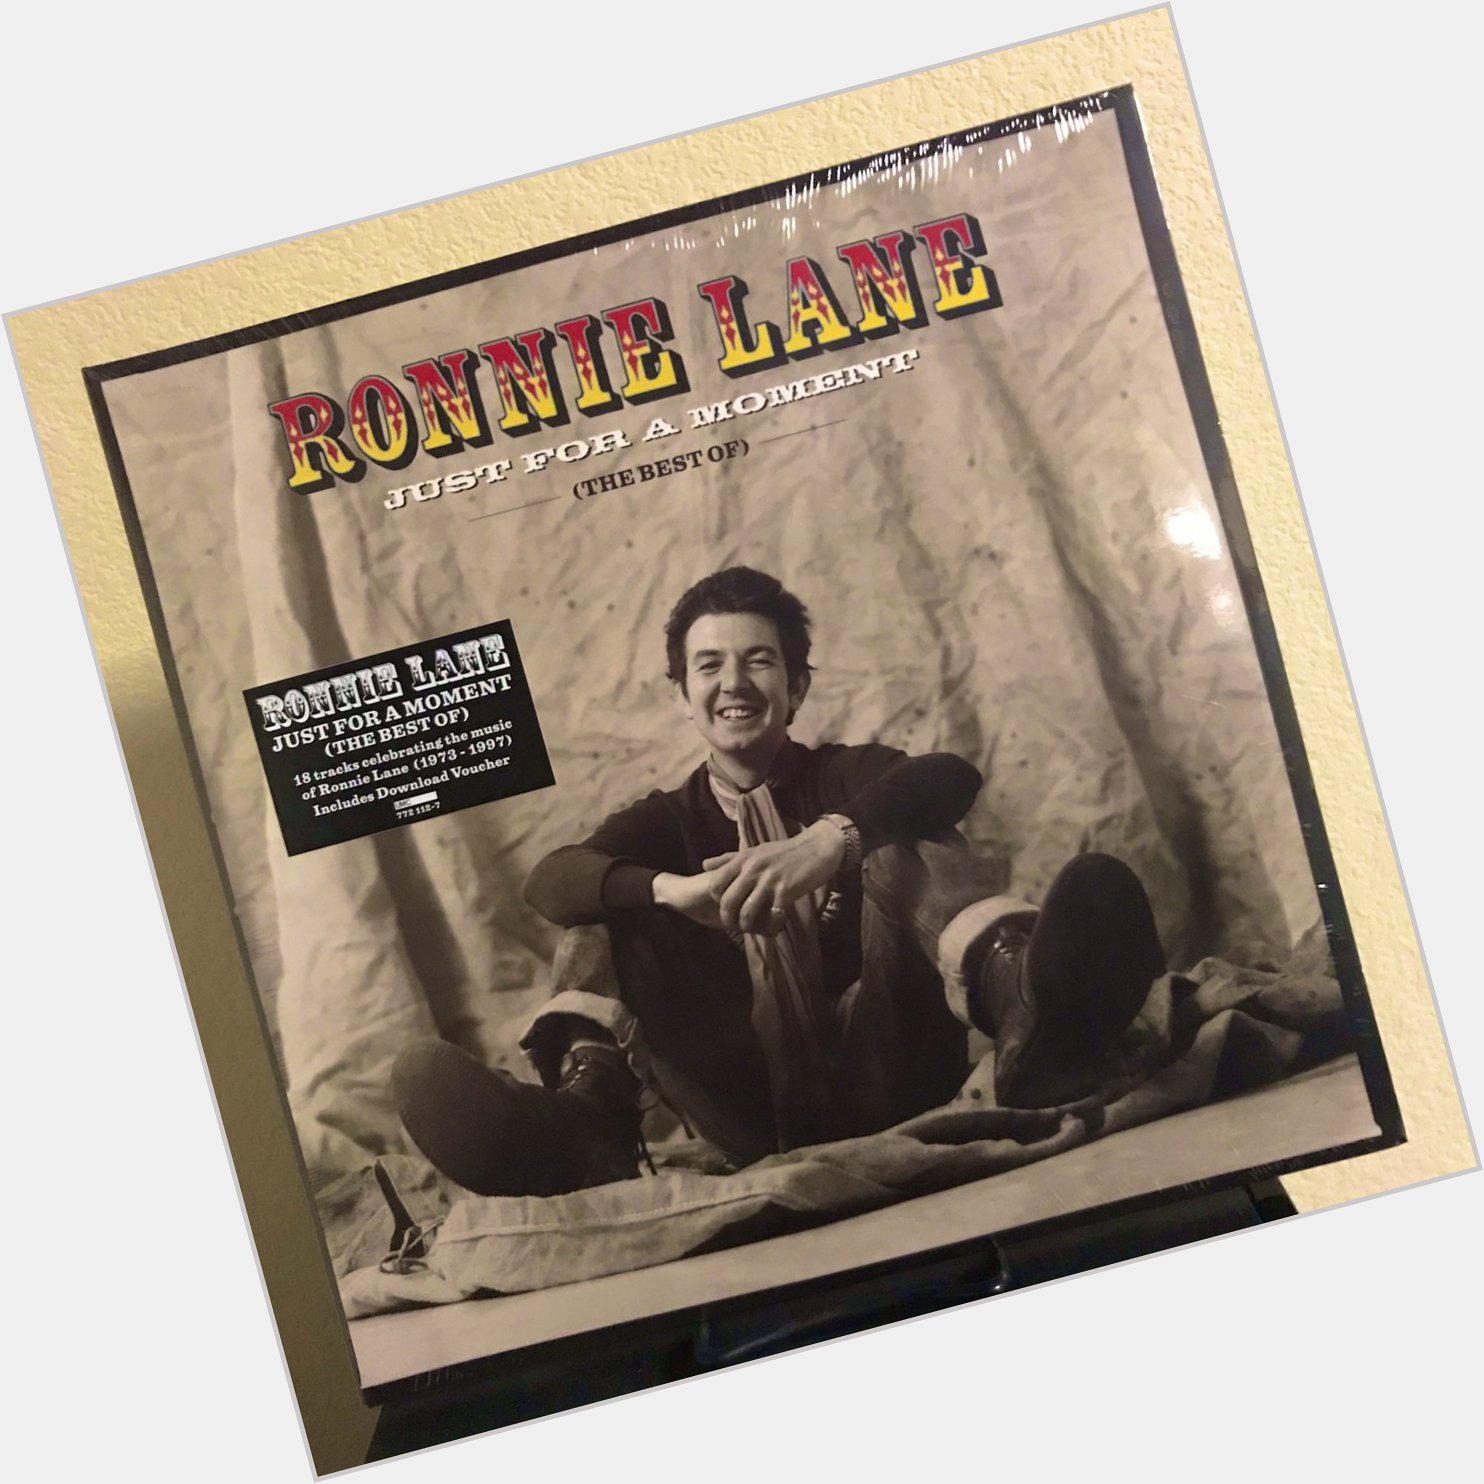 Happy Birthday, Plonk                                The poacher - Ronnie Lane  